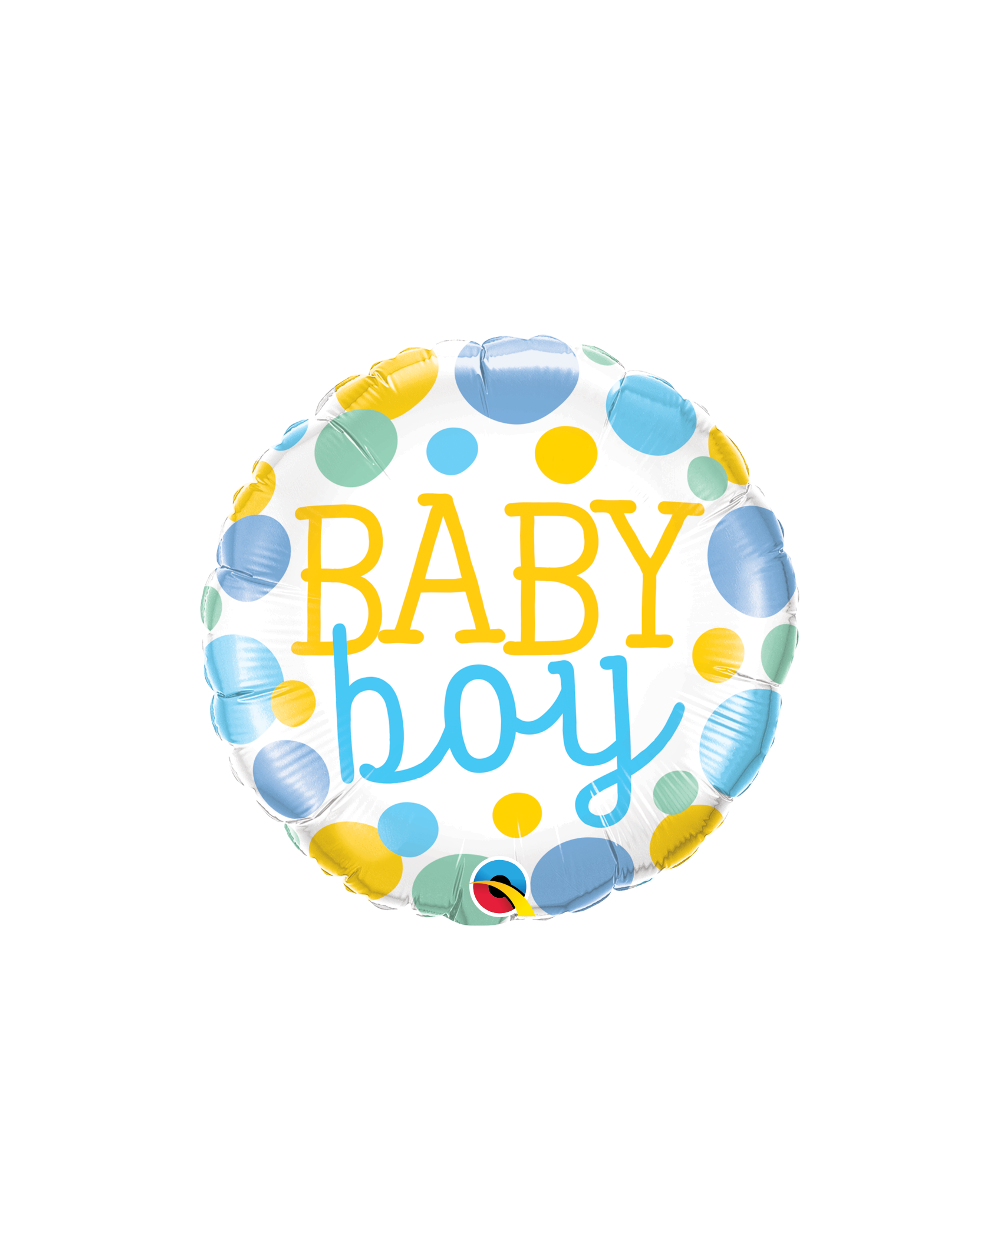 Geschenkballon Baby Boy Dots 45cm